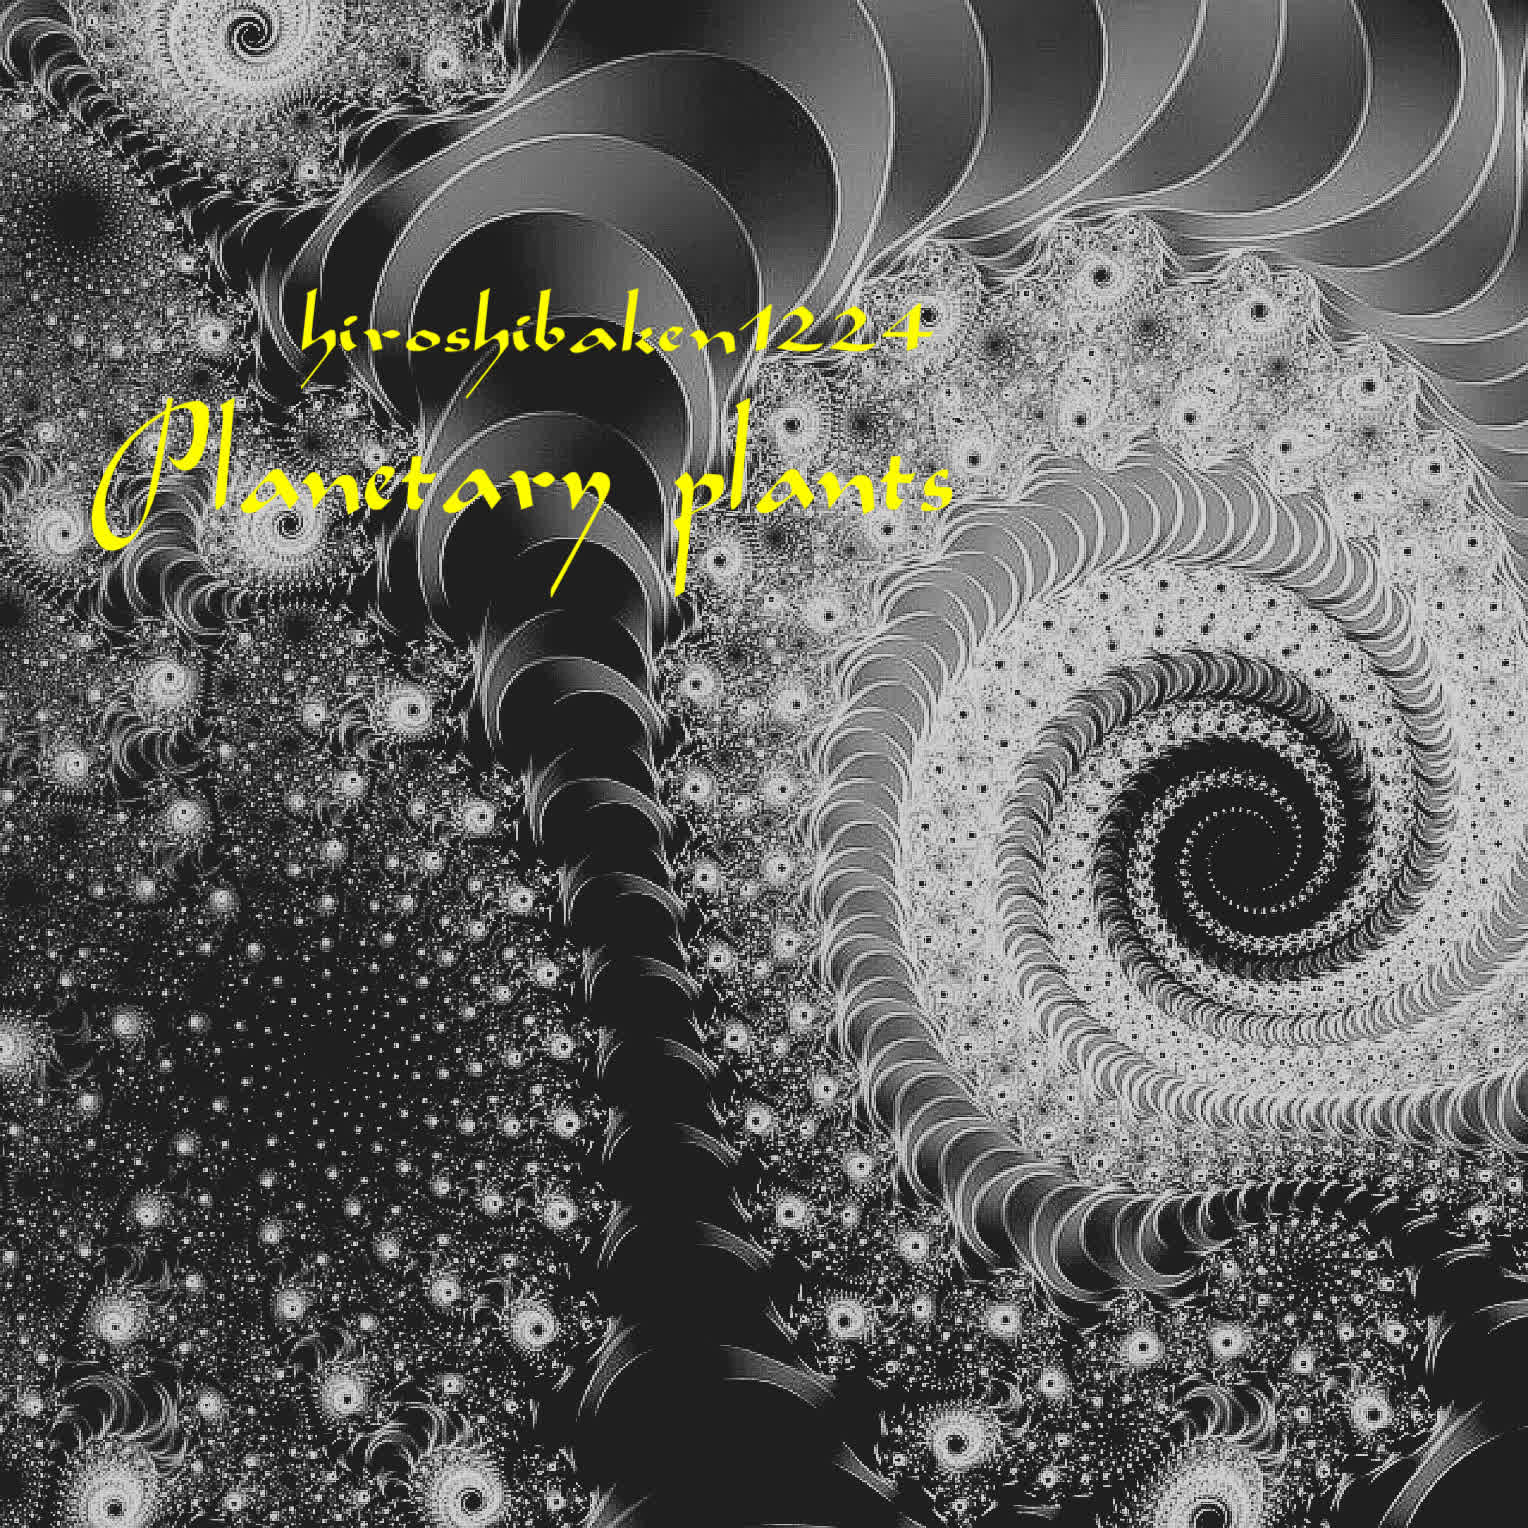 Planetary plants